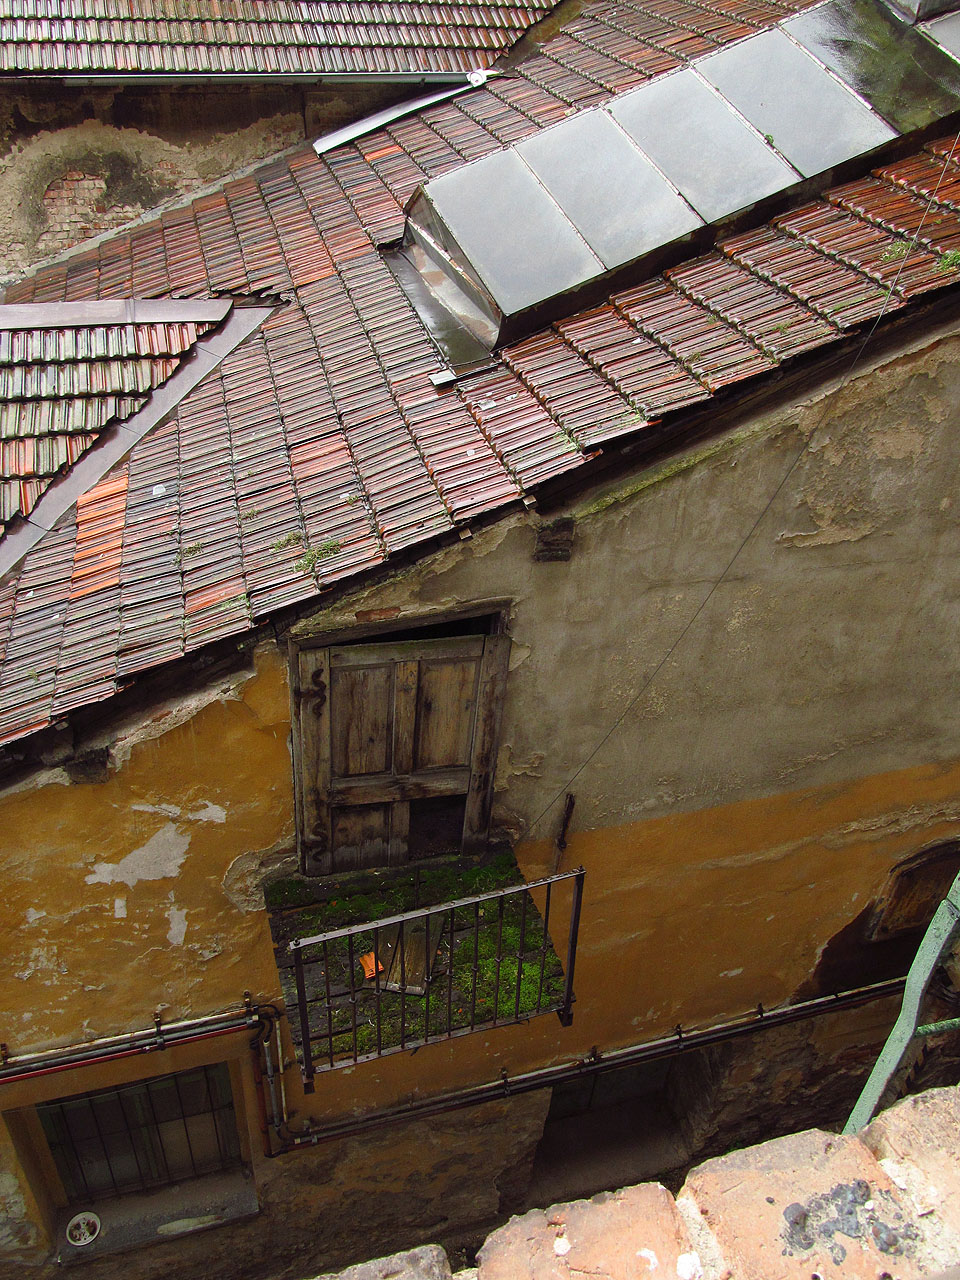 Další ze záhadných balkónků, které snad sloužily k uchycení dávno neexistujících potrubí či lan nebo ukládání zboží.